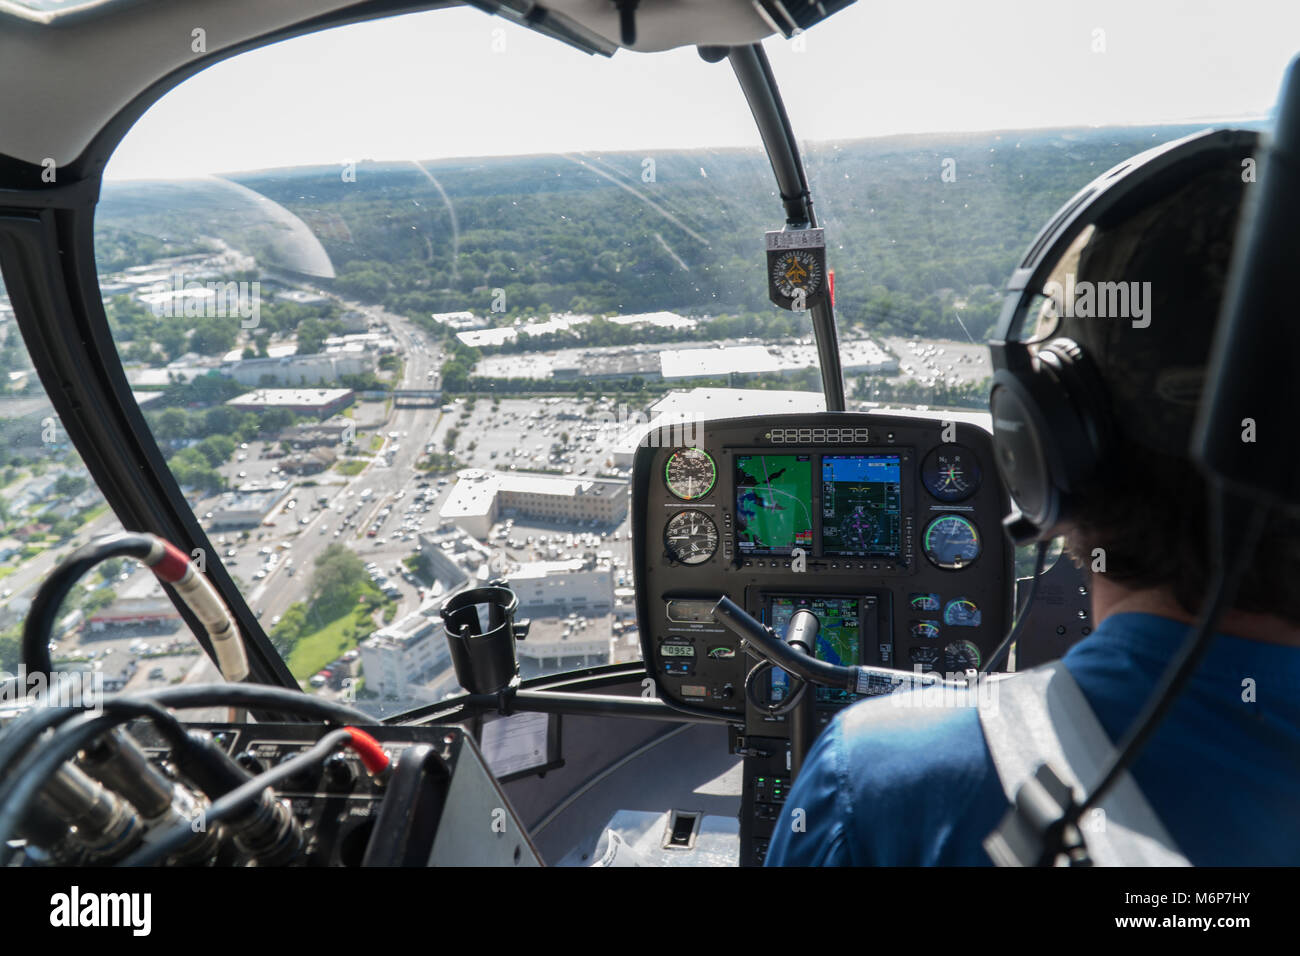 La Ciudad de Nueva York, circa 2017: Vista aérea dentro de la cabina de helicóptero volaba sobre una zona suburbana del tráfico por carretera en un brillante día de verano. Sobre el hombro de pi Foto de stock